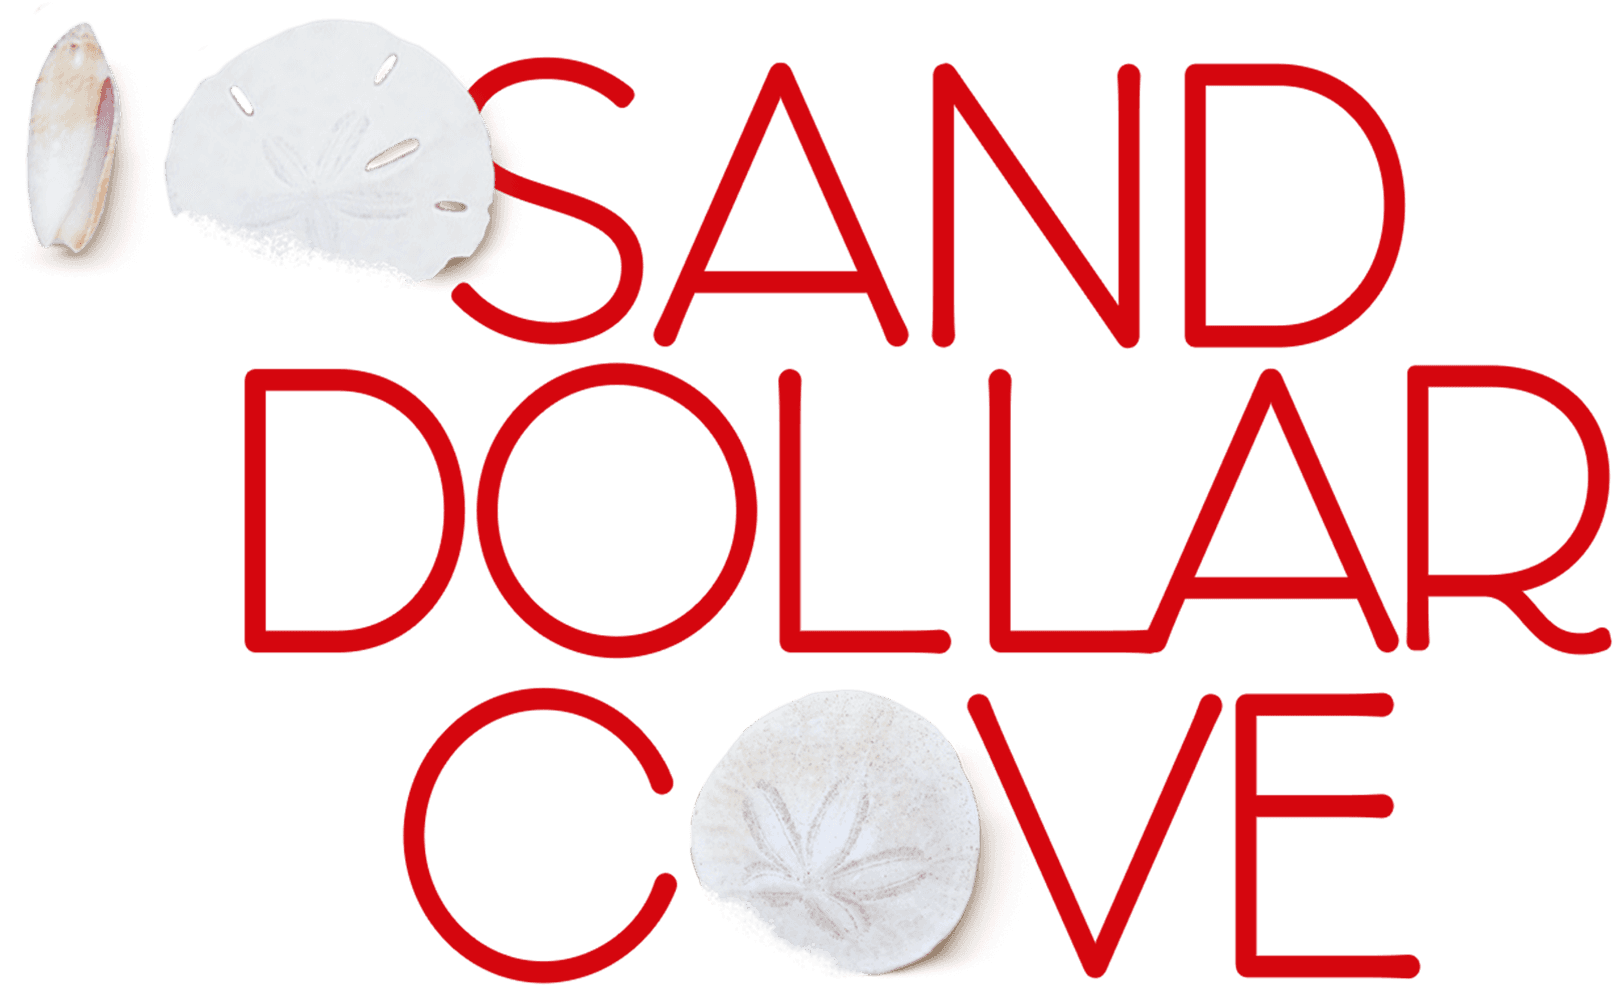 Sand Dollar Cove logo